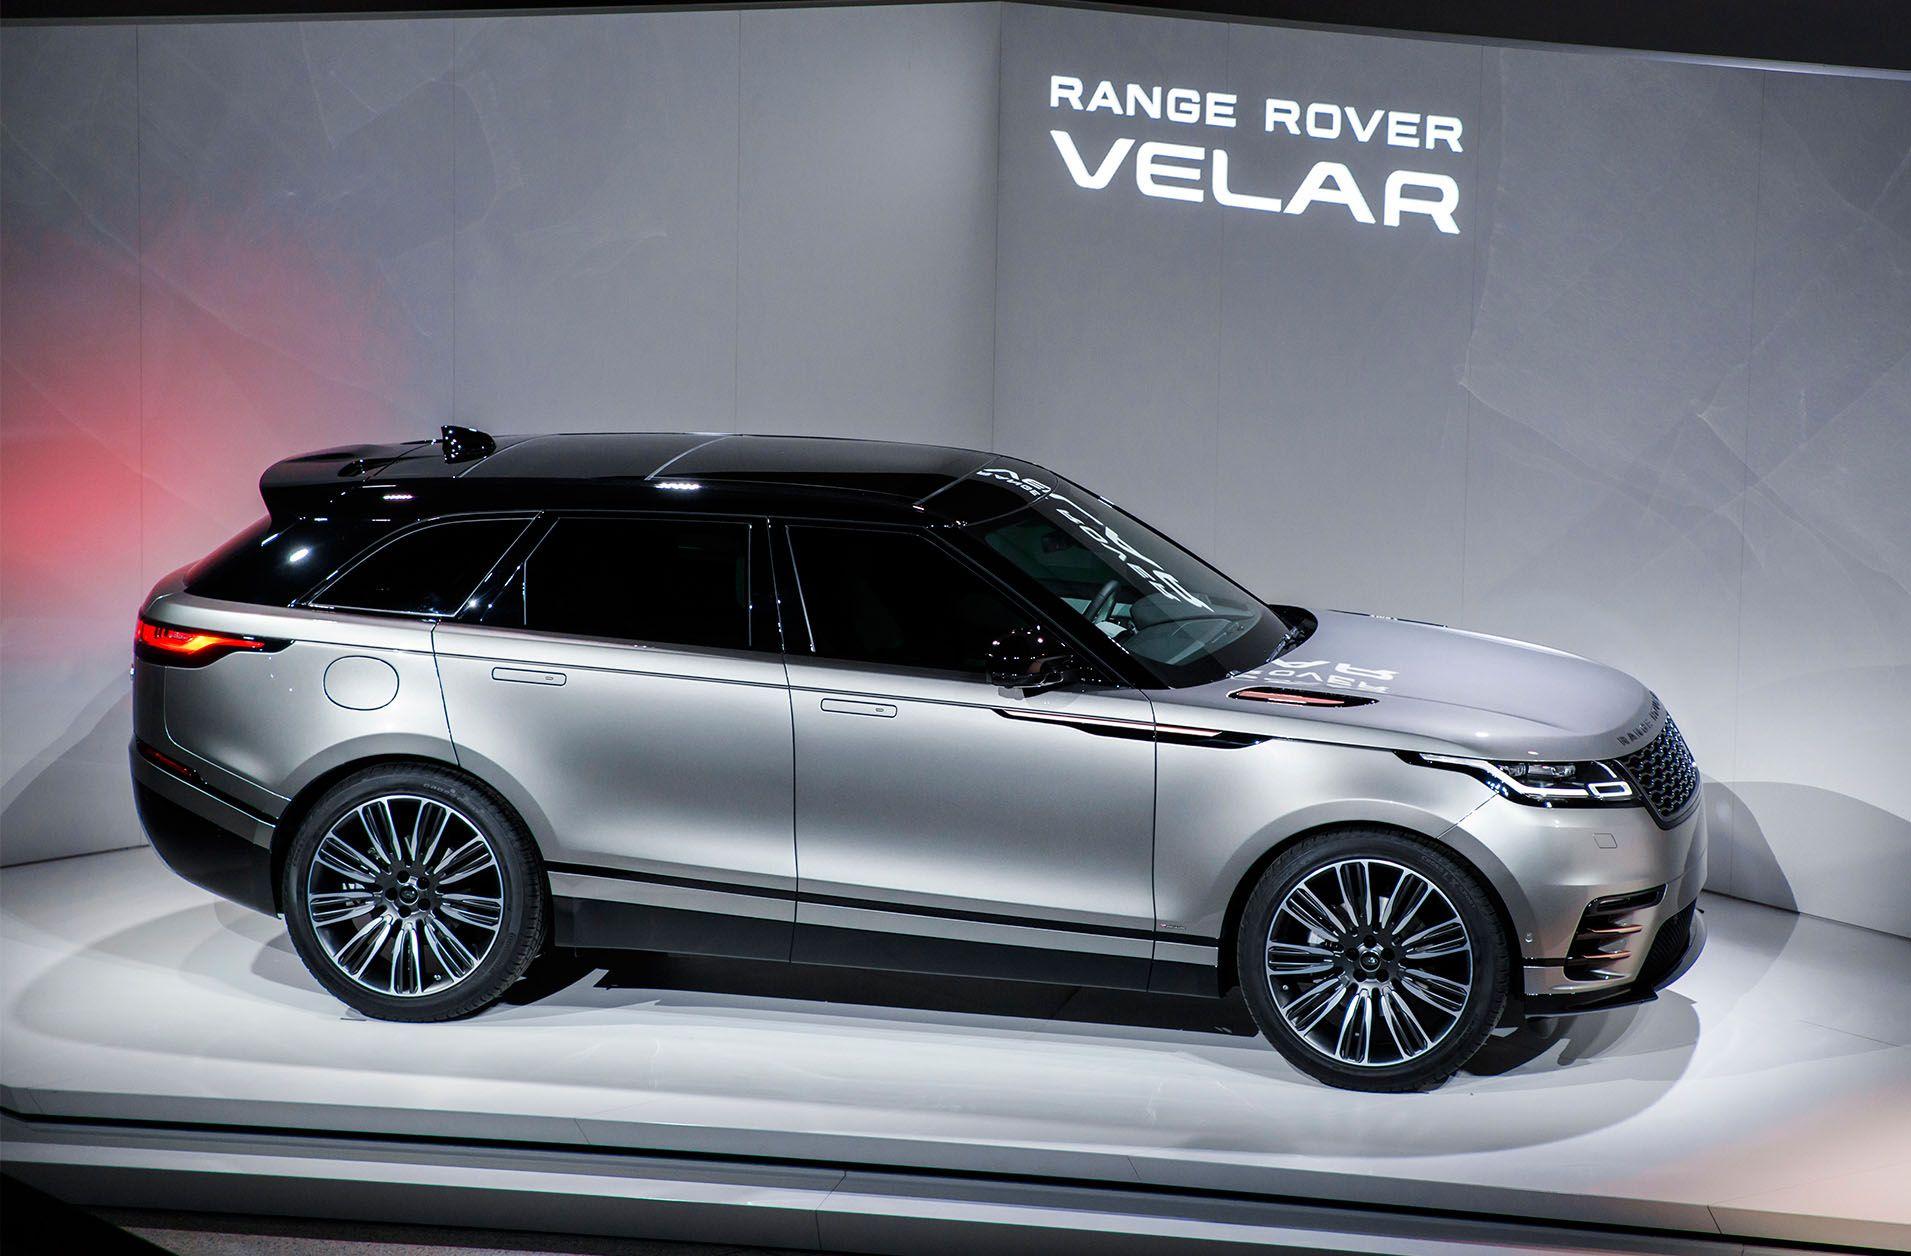 Range Rover Velar Background Wallpaper. HD Car Wallpaper